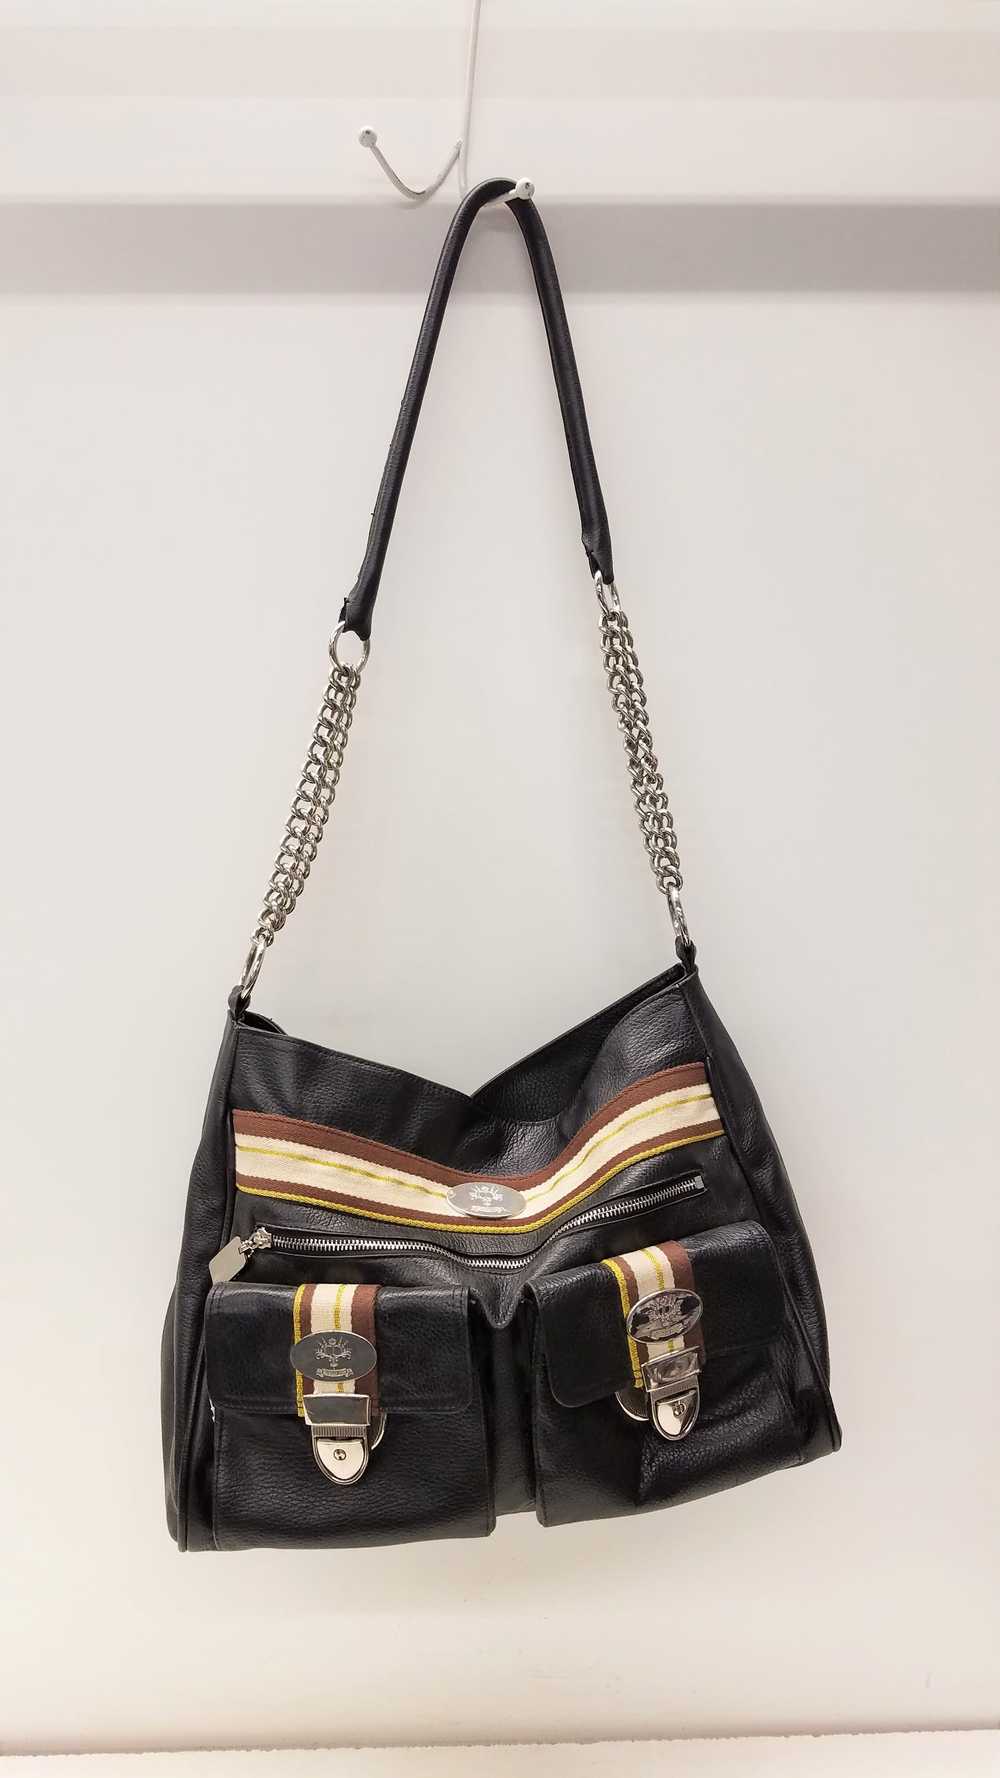 Christine Price Leather Pebbled Shoulder Bag Black - image 6